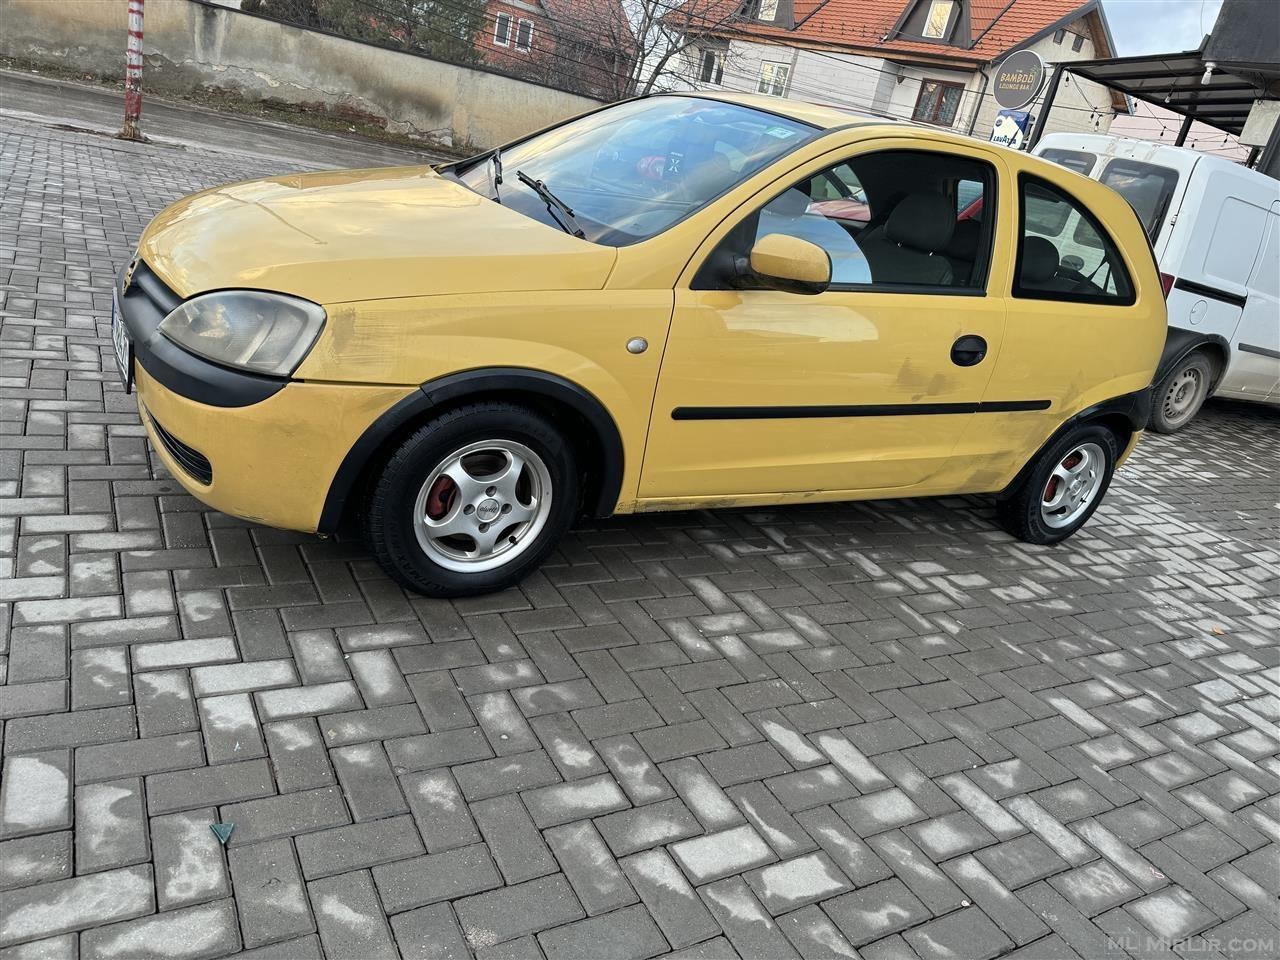 Opel corsa 1.0 benzin viti prodhimit 2000 Rks 7 muj